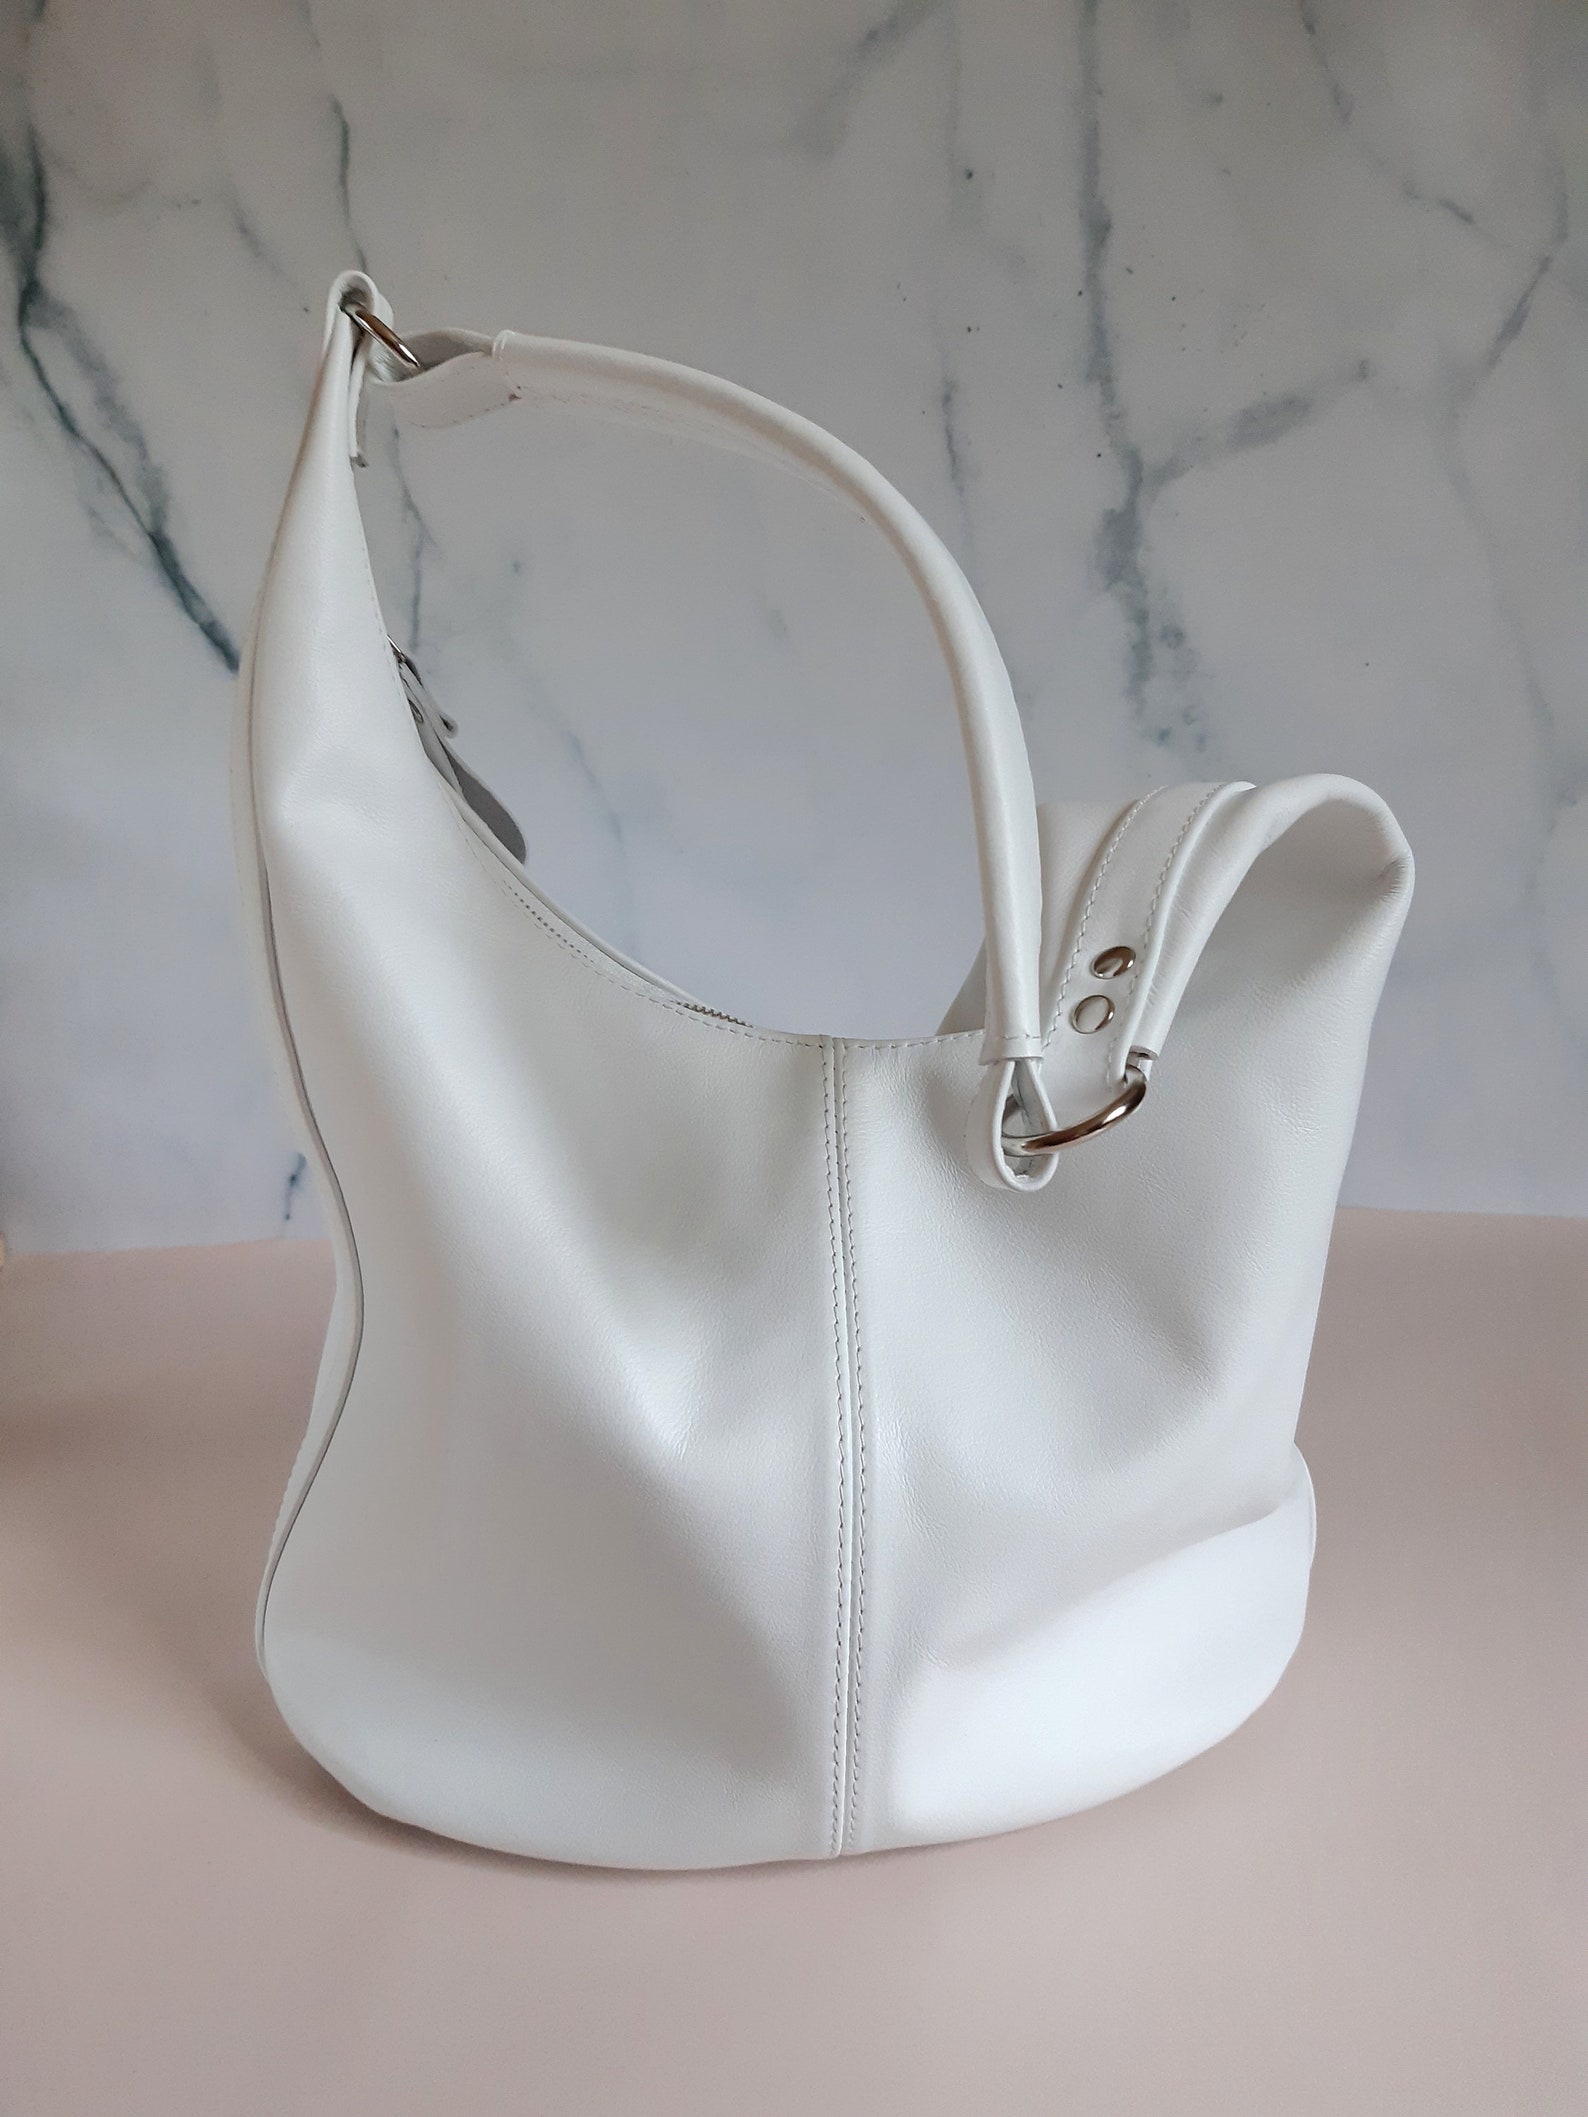 White hobo leather bag Slouch shoulder bag Medium size | Etsy